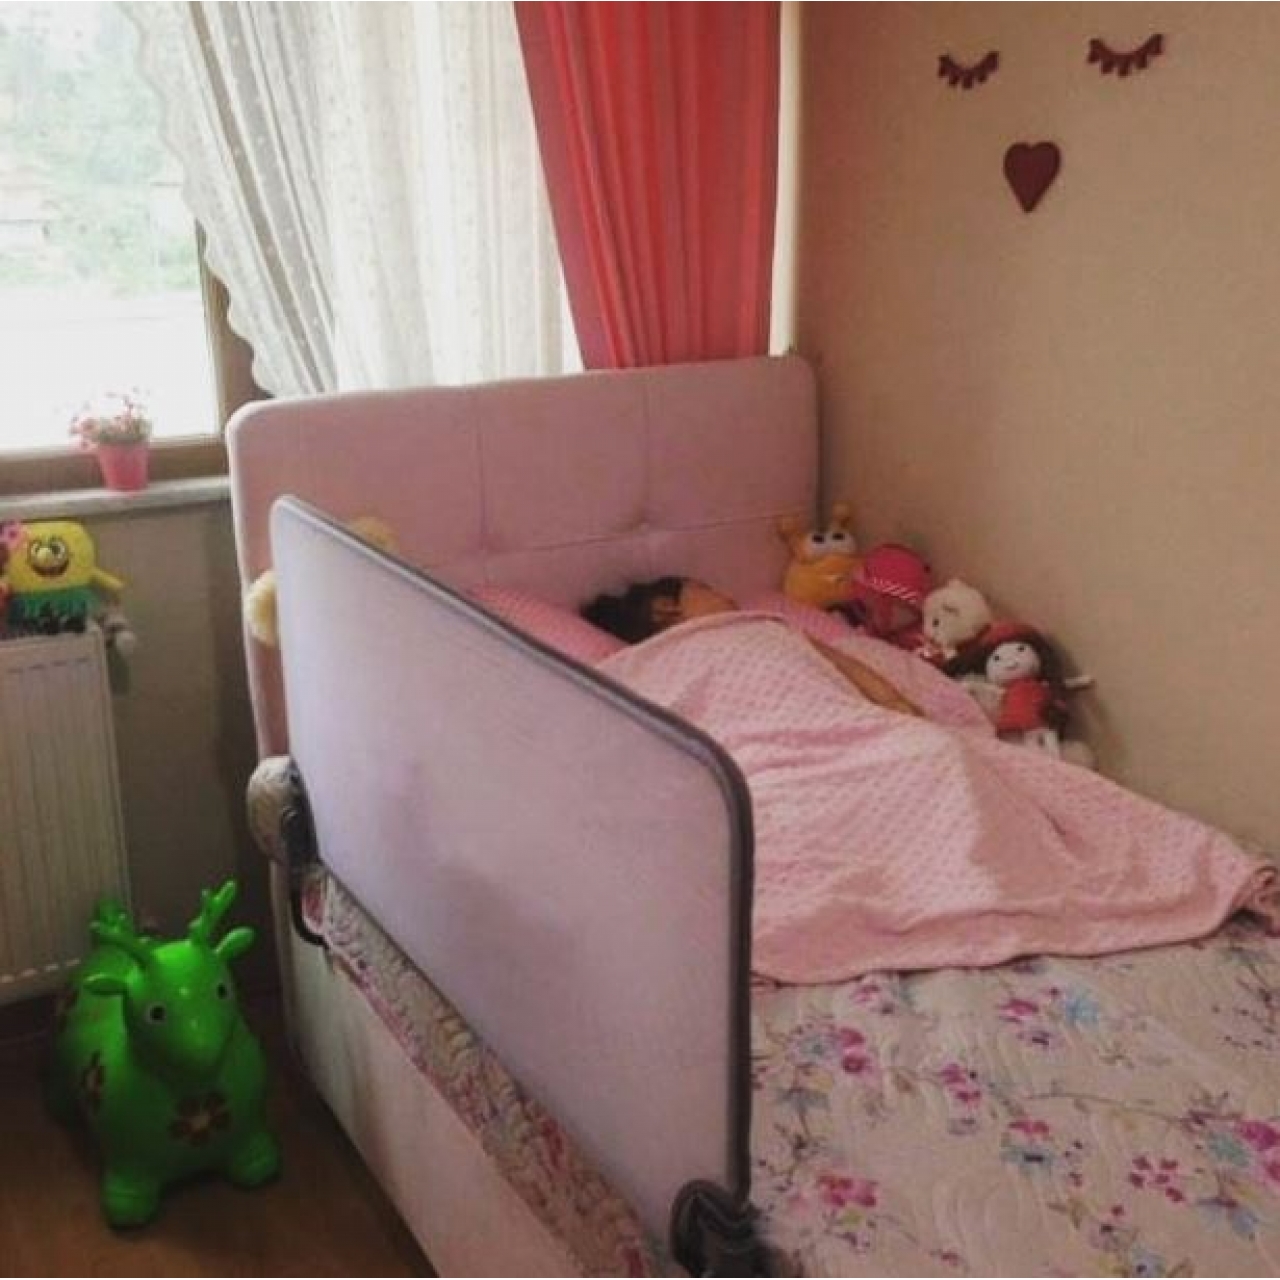 Agubugu Baby - Katlanabilir Yatak Bariyeri - Desensiz Beyaz 180 cm